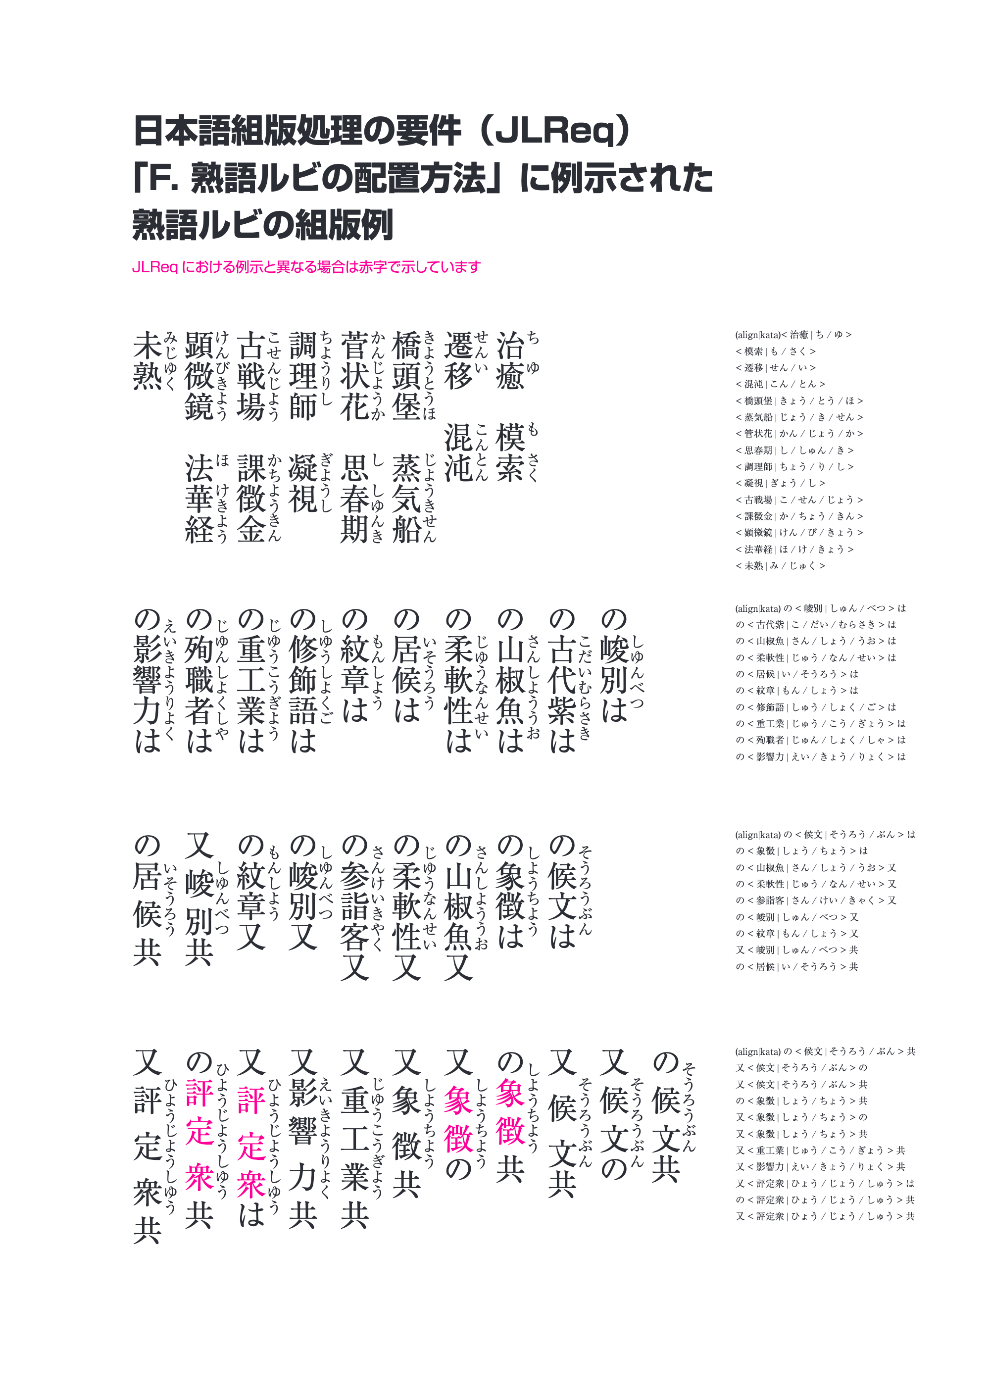 日本語組版処理の要件（JLReq）「F.熟語ルビの配置方法」に例示された熟語ルビの配置例